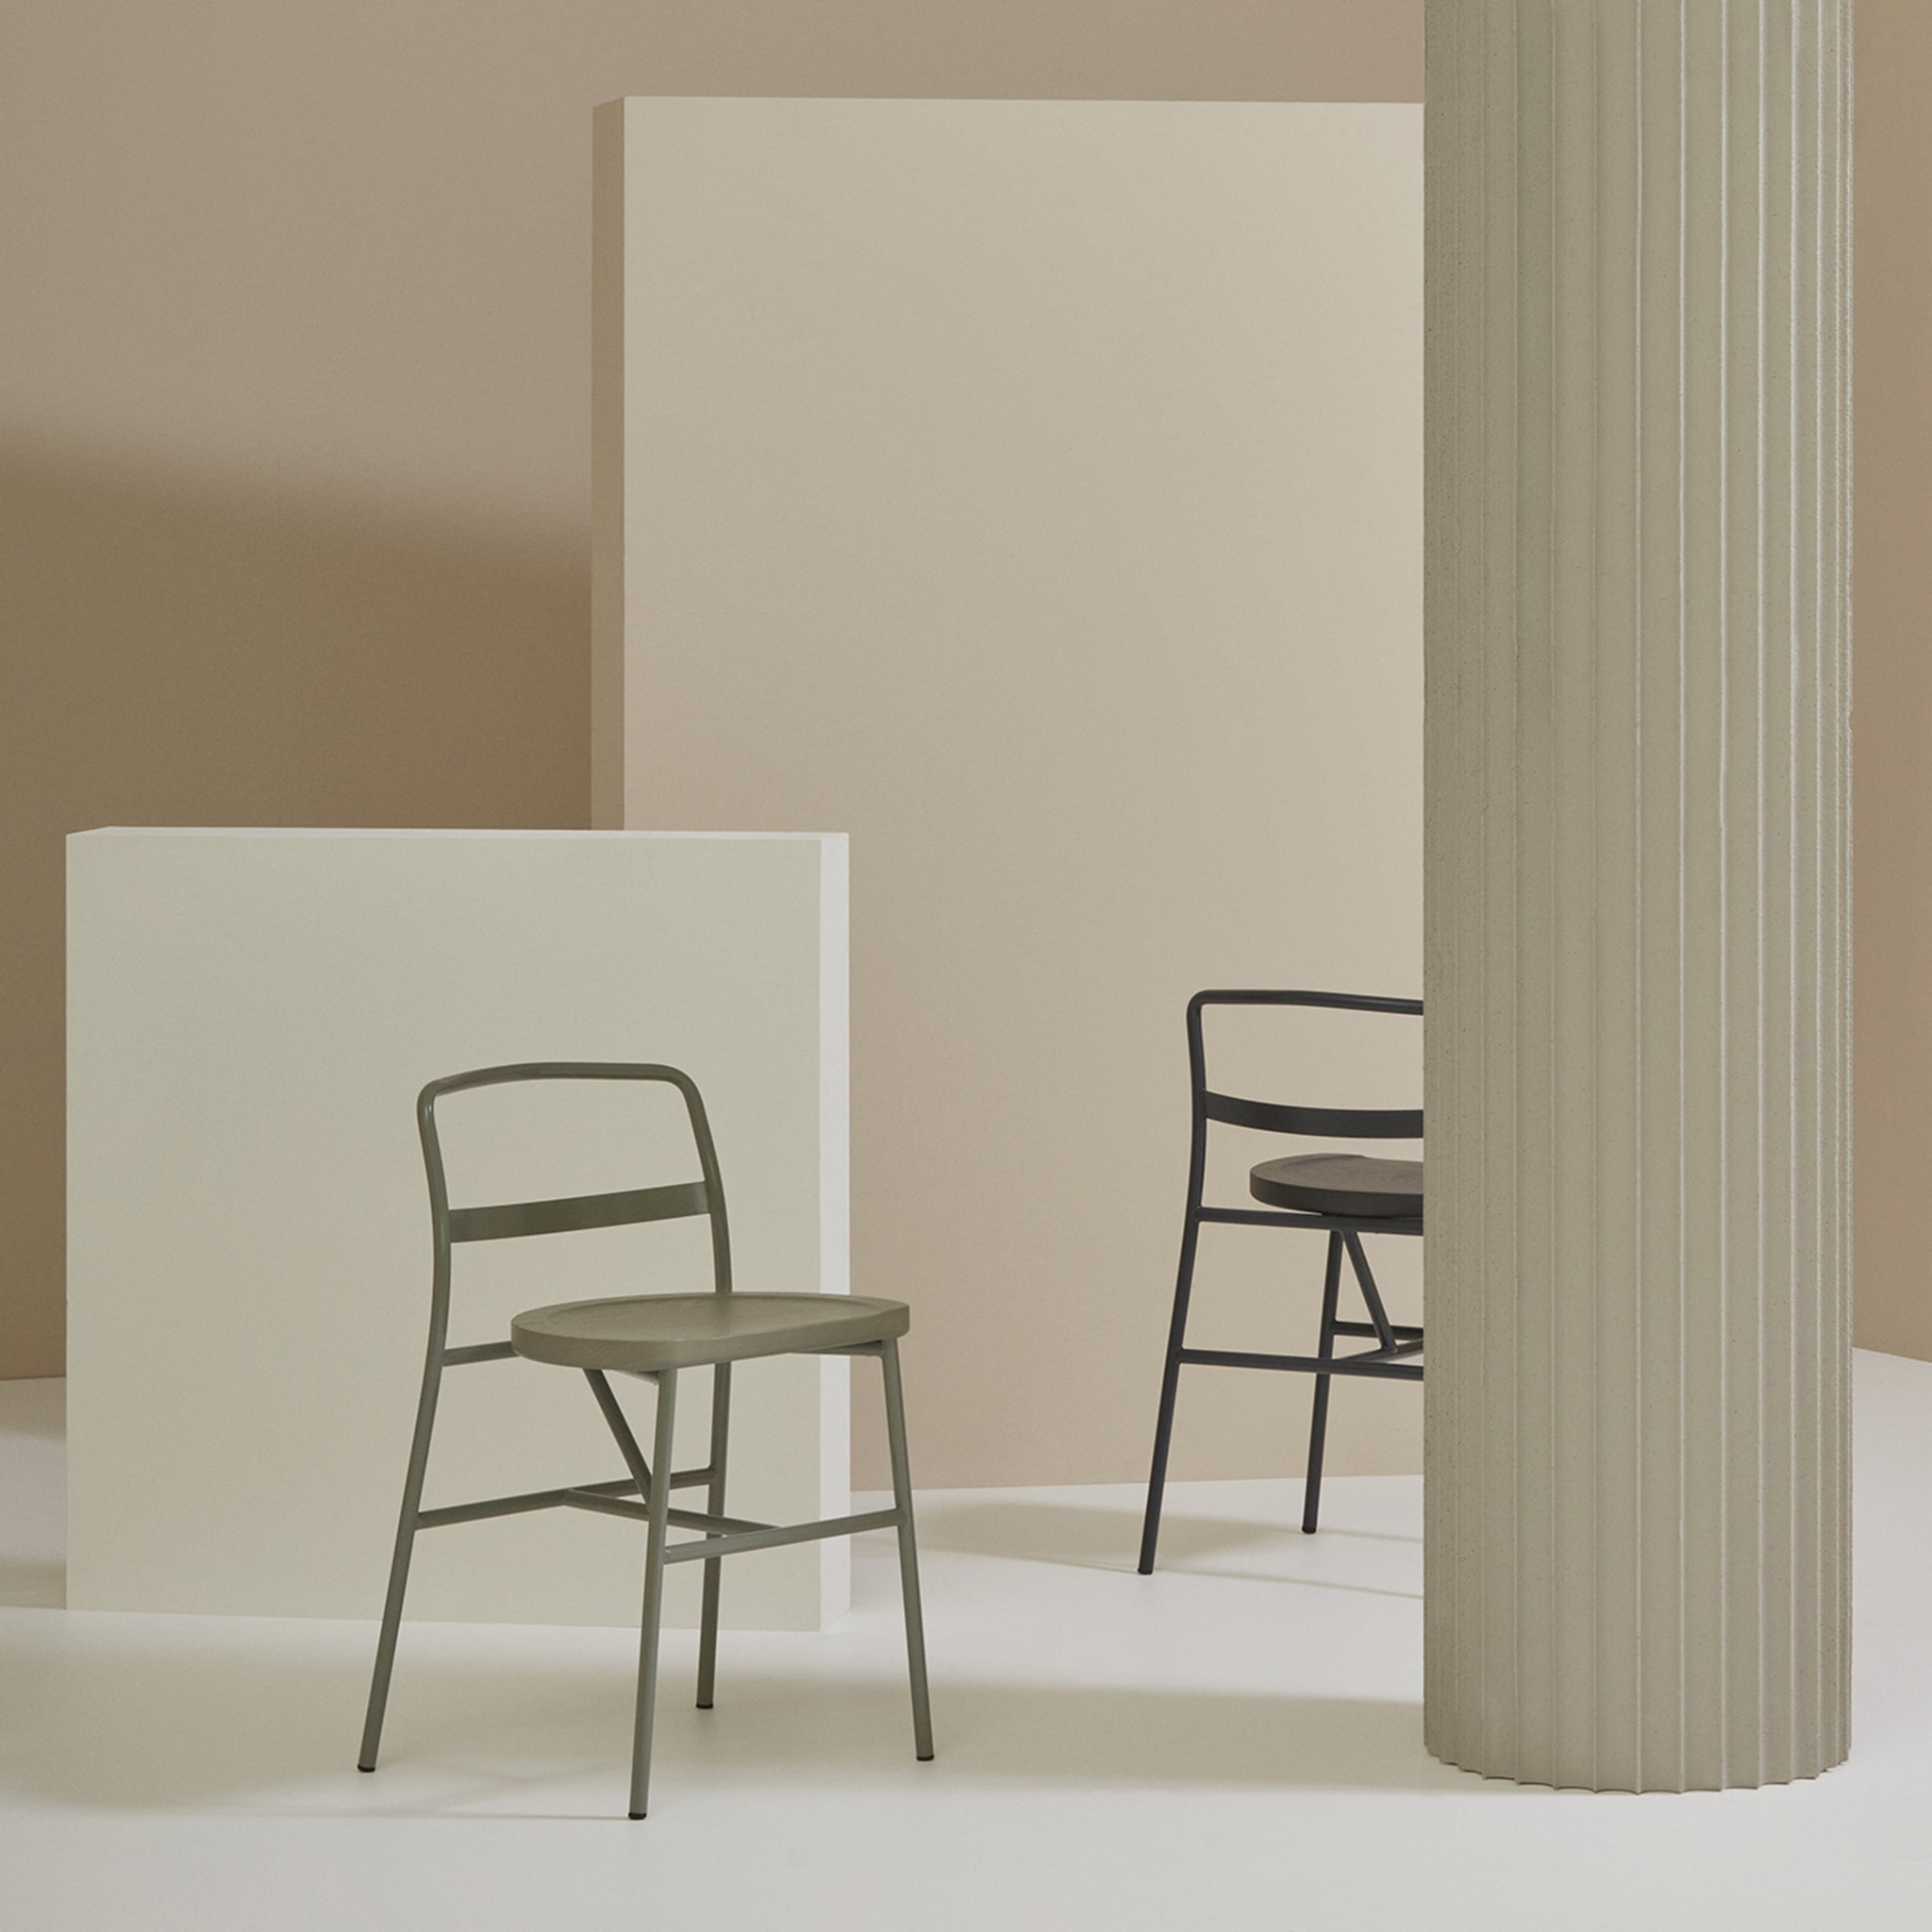 Puccio 726 Zementgrauer Stuhl von Emilio Nanni - Alternative Ansicht 2